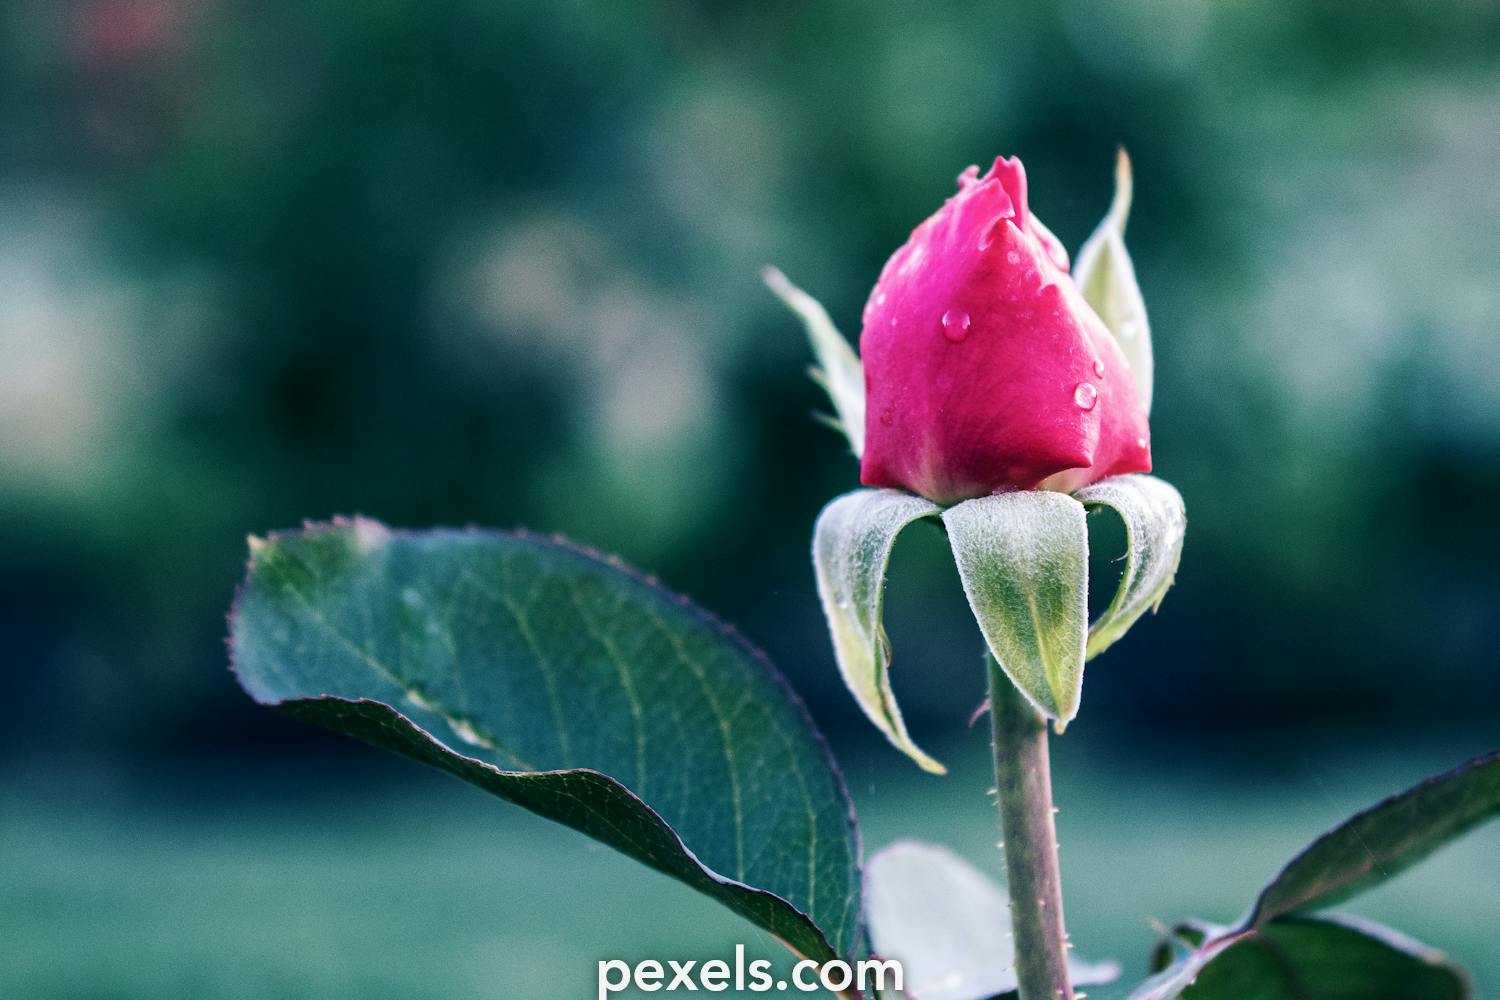 Tuyệt đẹp thông qua 100+ ảnh nụ hoa hồng đẹp Được chụp từ góc độ khác nhau